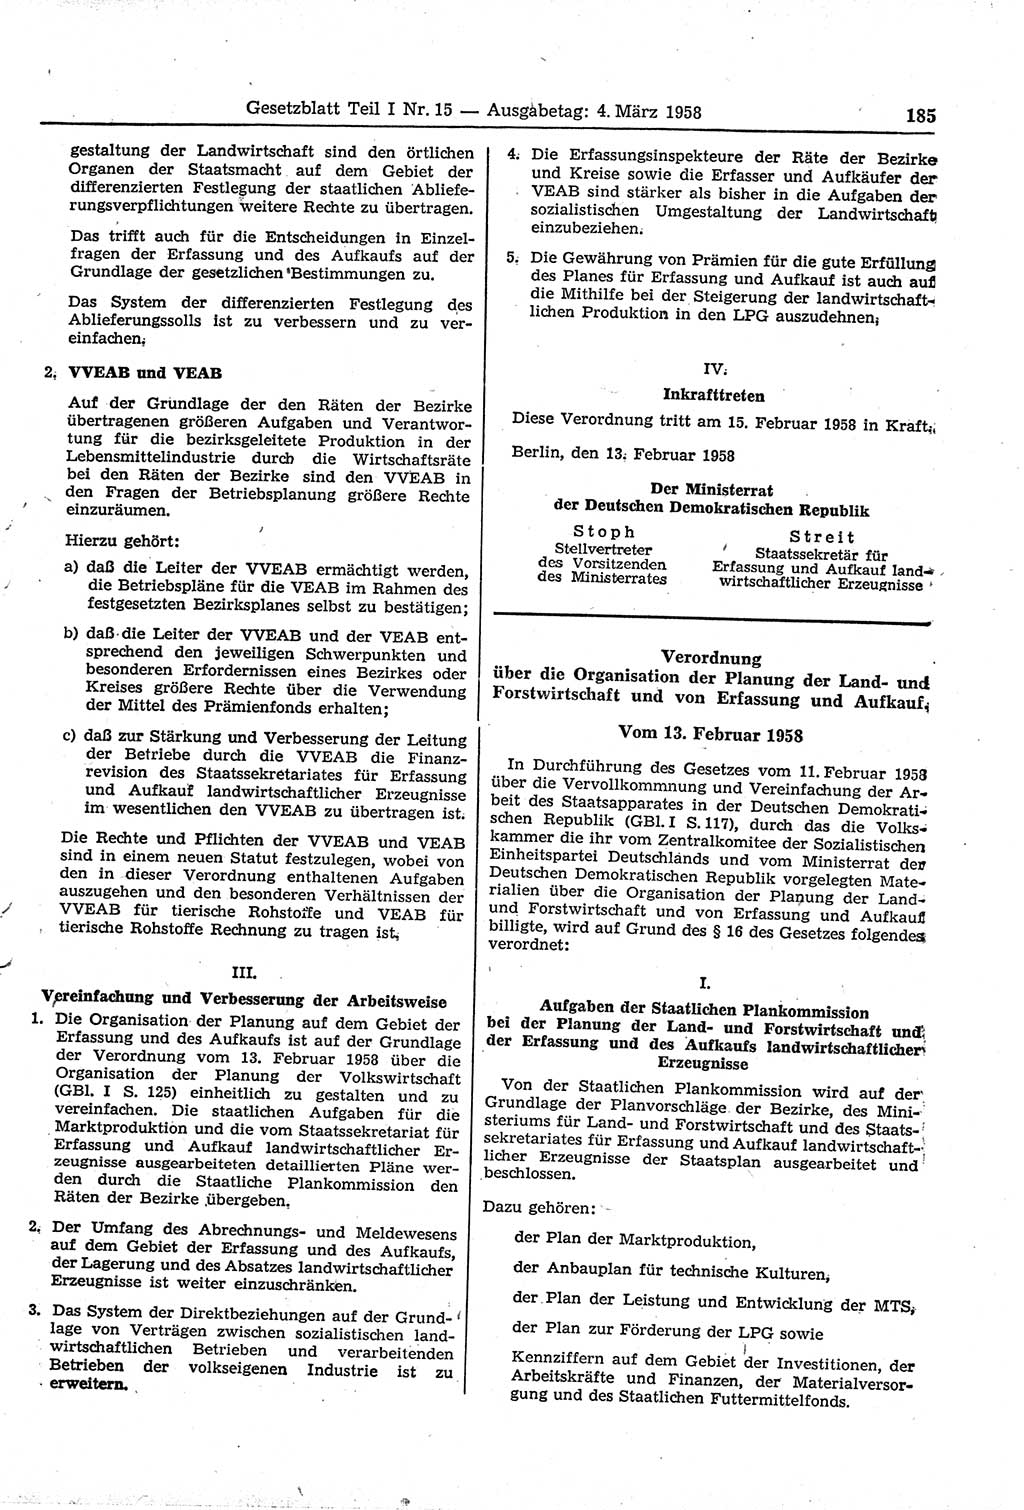 Gesetzblatt (GBl.) der Deutschen Demokratischen Republik (DDR) Teil Ⅰ 1958, Seite 185 (GBl. DDR Ⅰ 1958, S. 185)